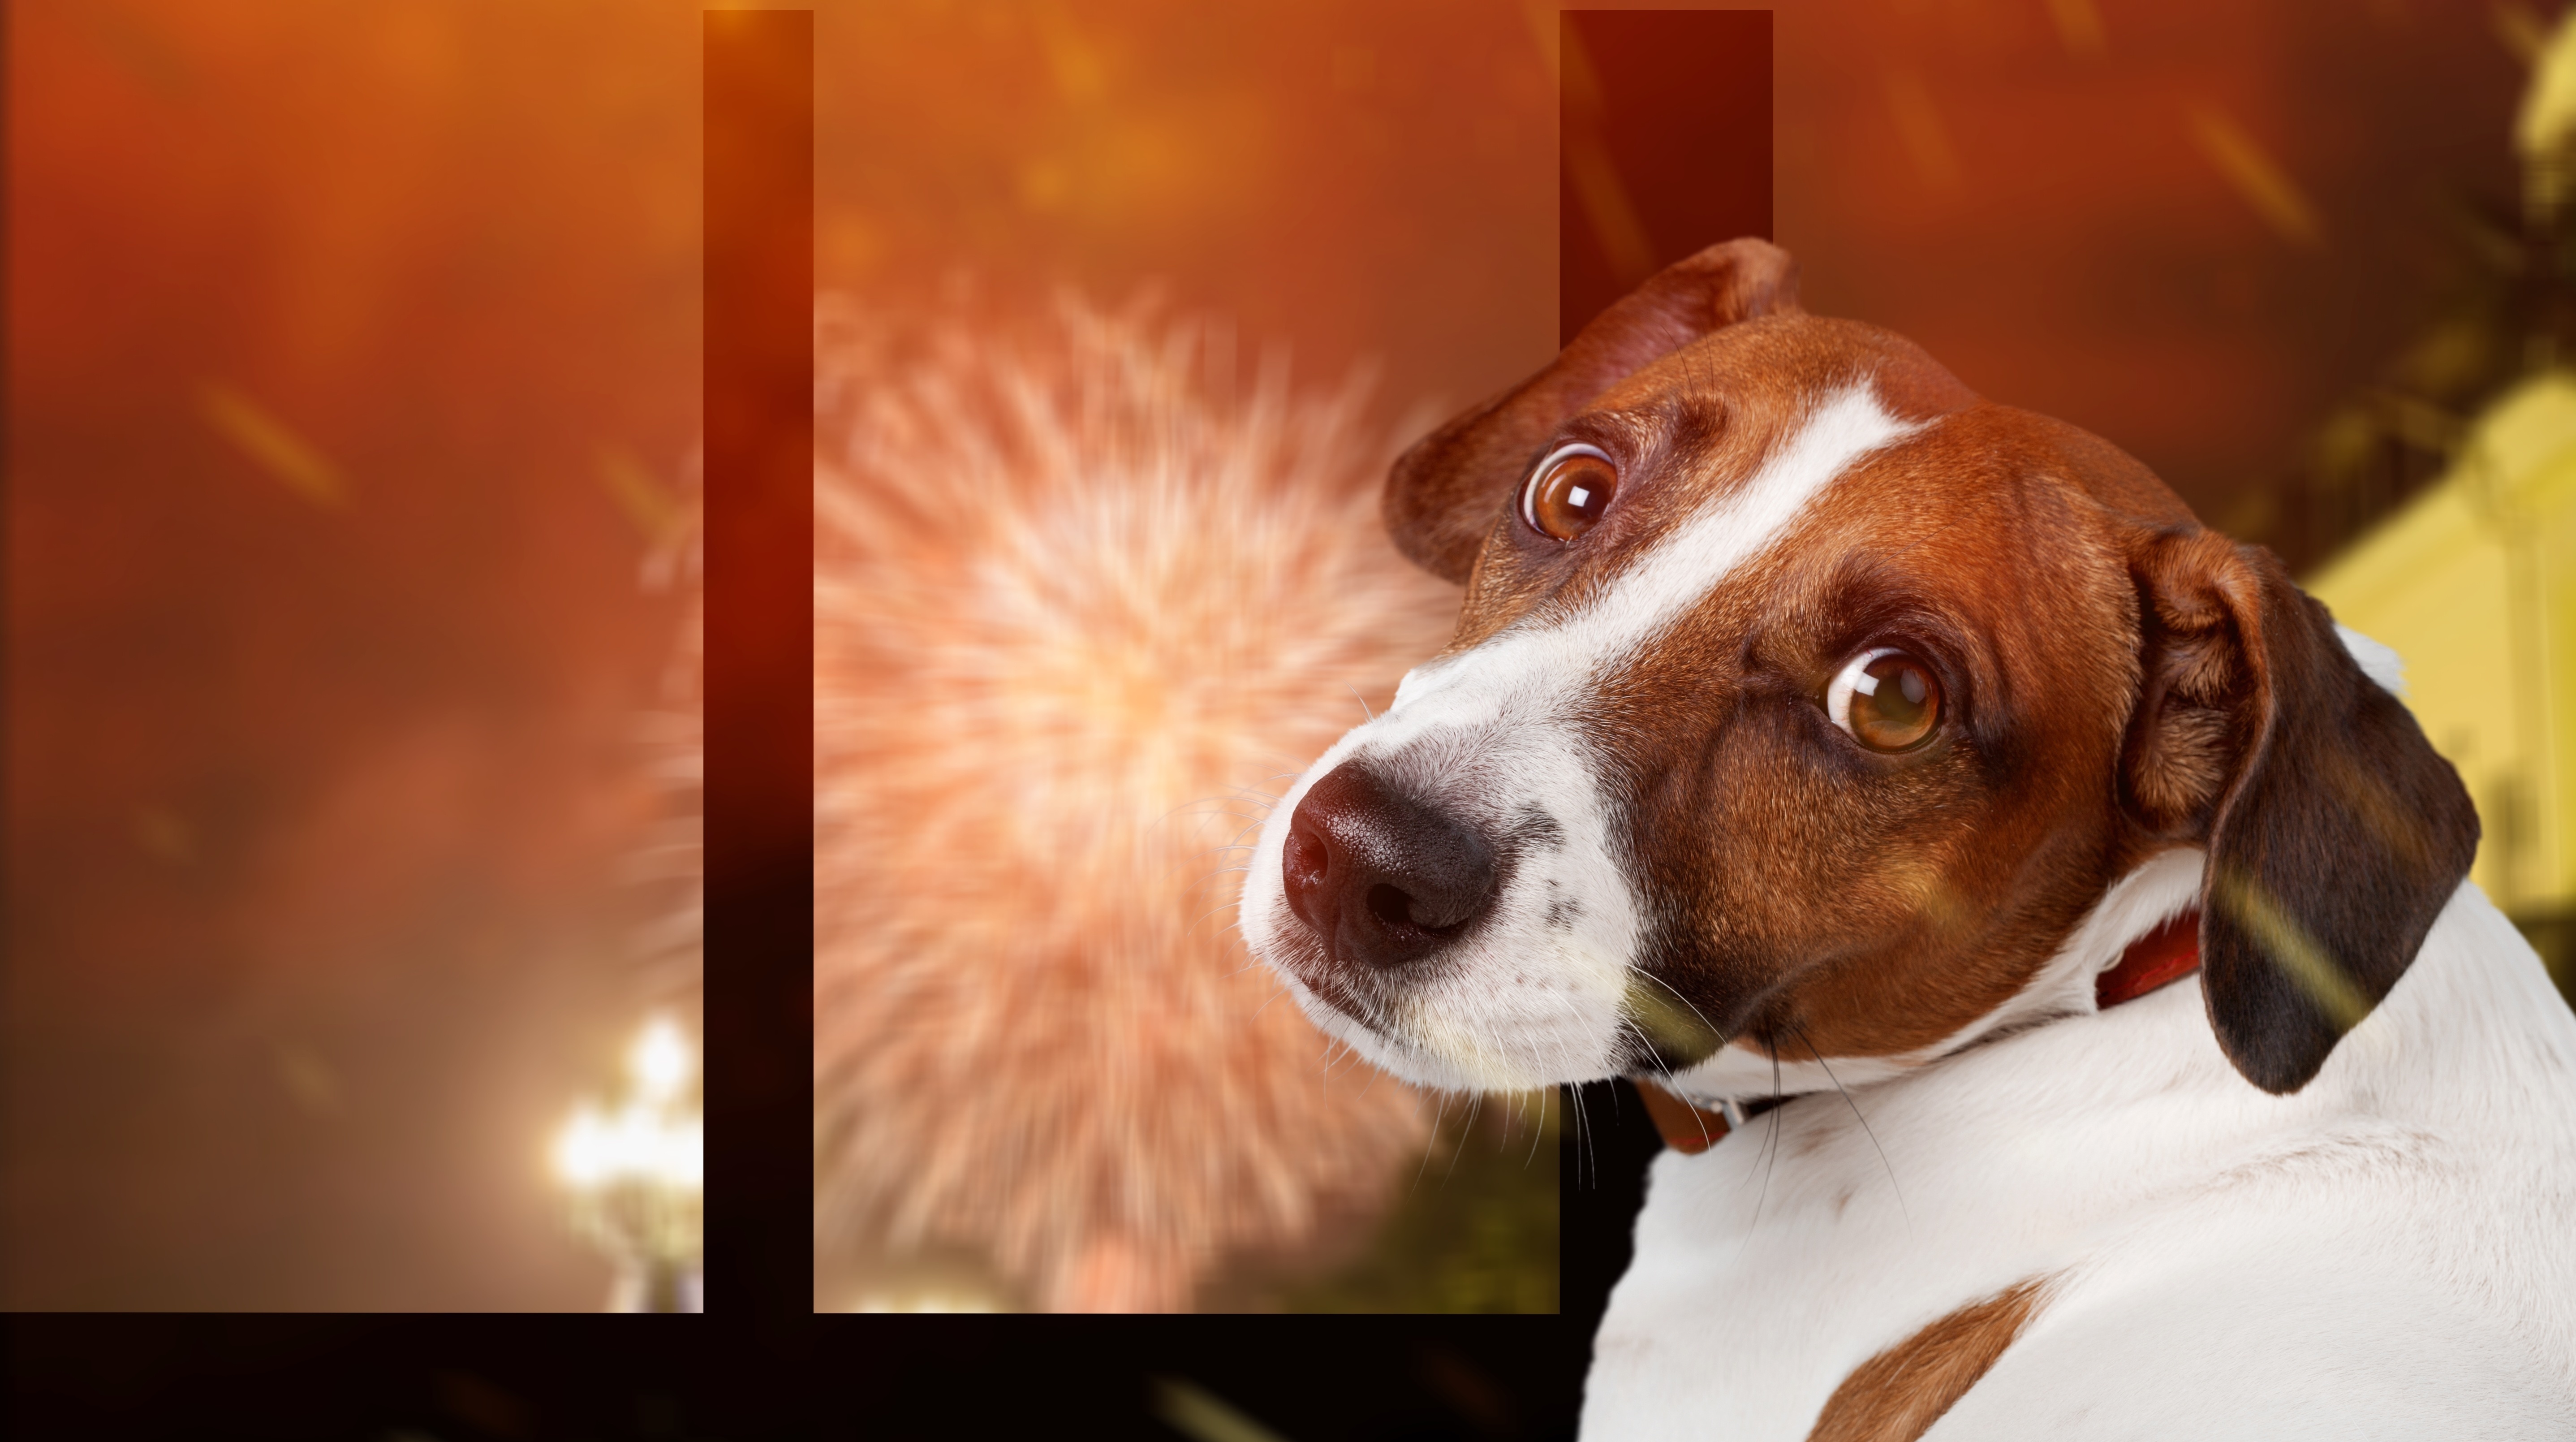 Com maior capacidade auditiva, cães sofrem com fogos de artifício